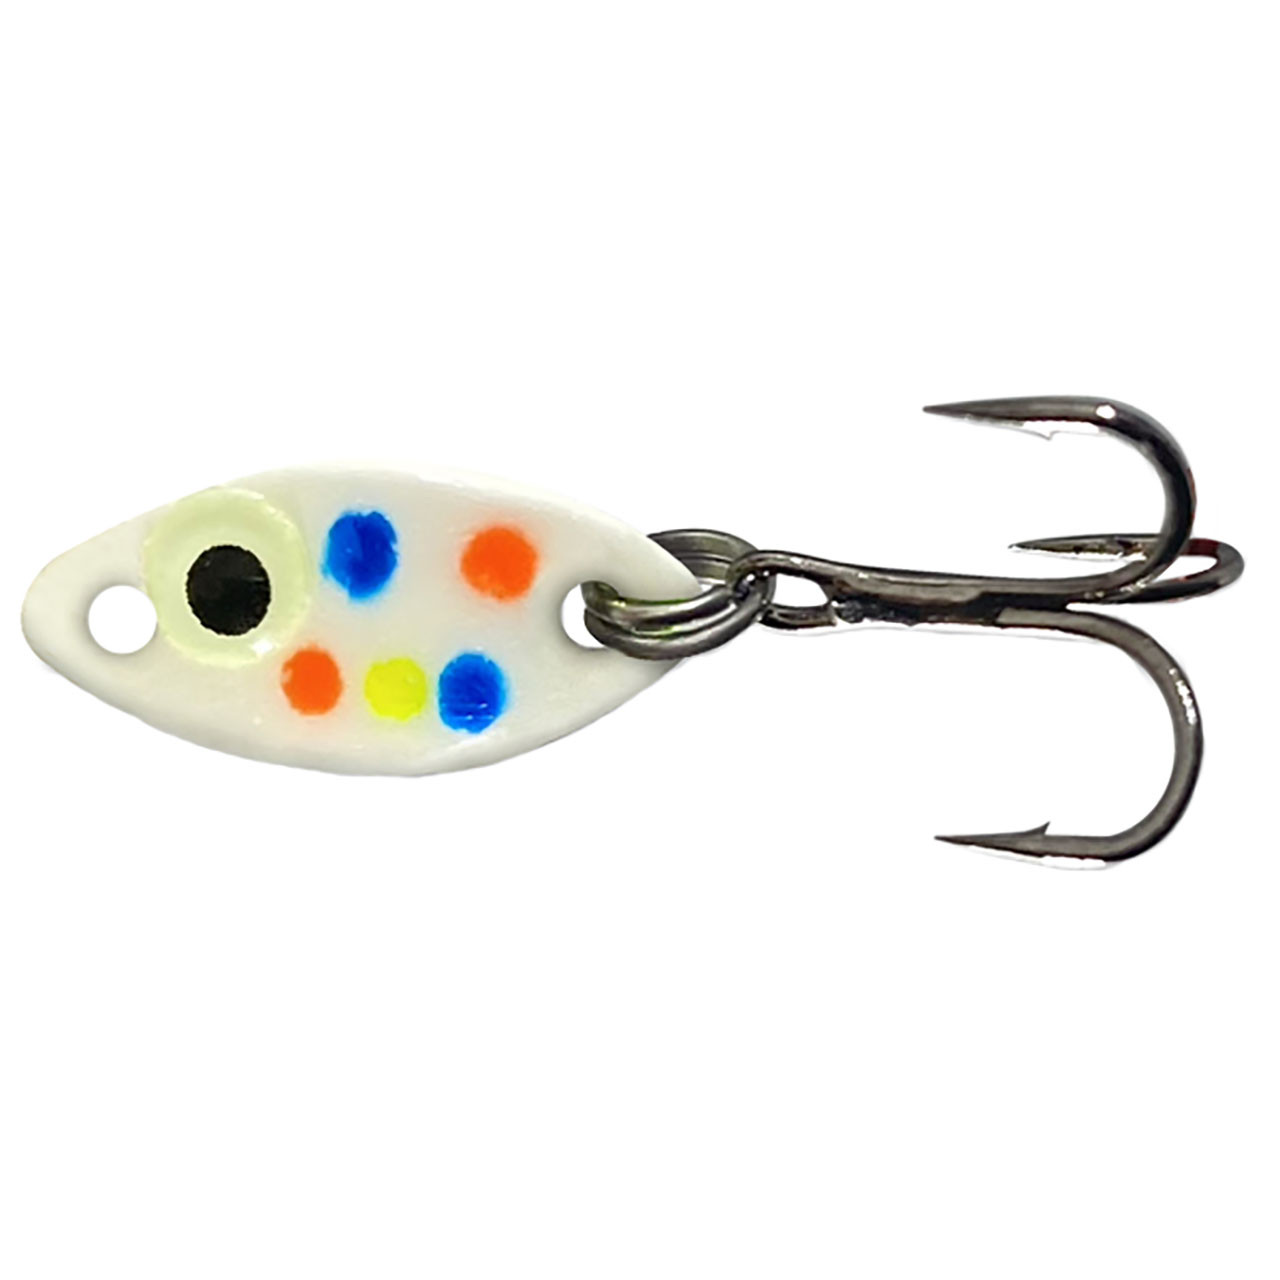 Free: Aqua spoon MPLS, MINN U.S.A. fishing lure - Other Sporting